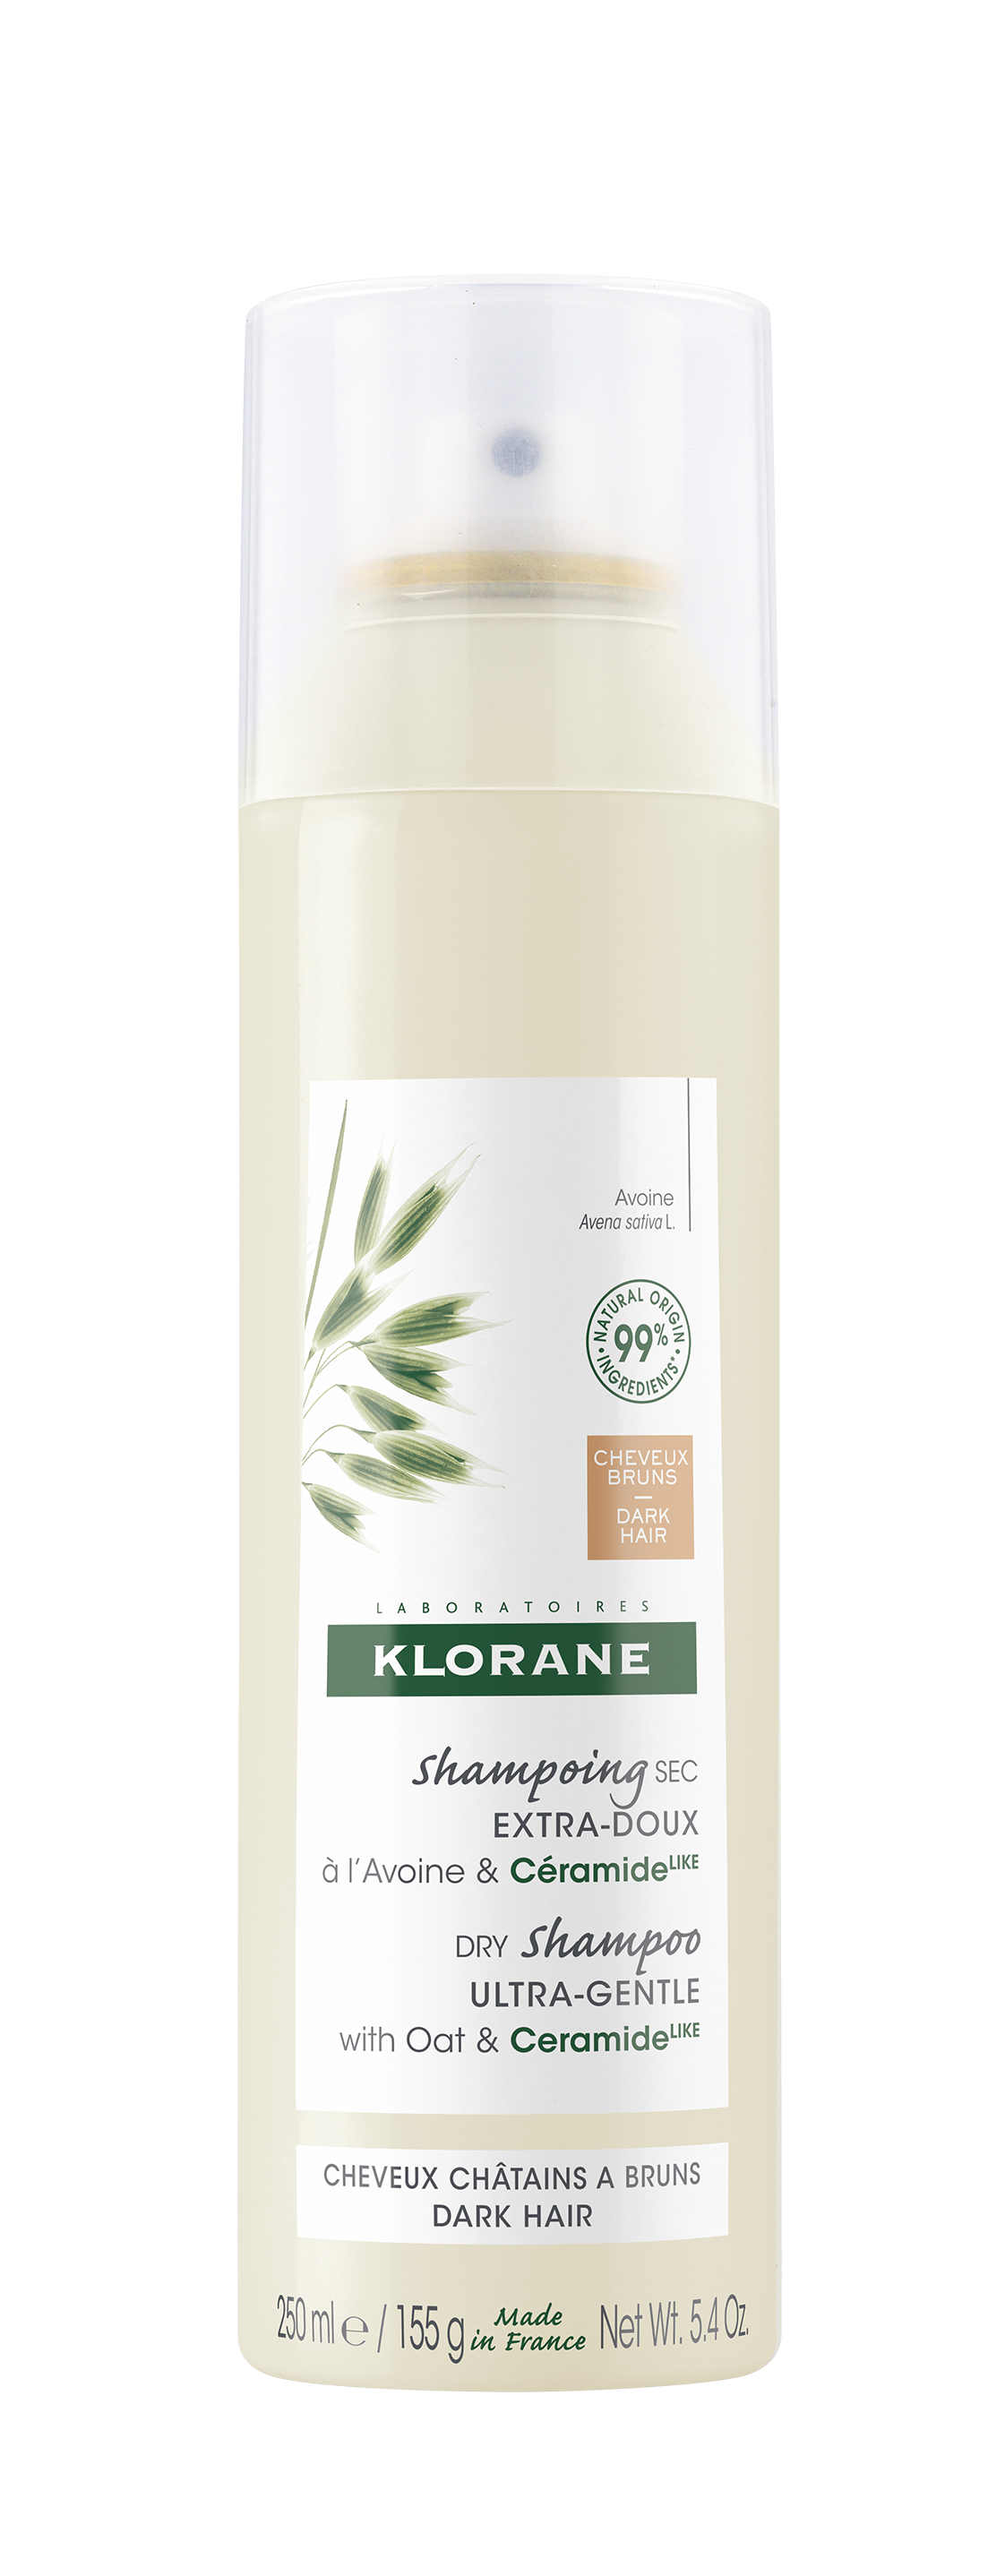 შვრიის ექსტრაქტზე დამზადებული მშრალი შამპუნი ბუნებრივი ტონირებული ეფექტით - კლორანი / Dry shampoo with oat milk Natural Tint – KLORANE